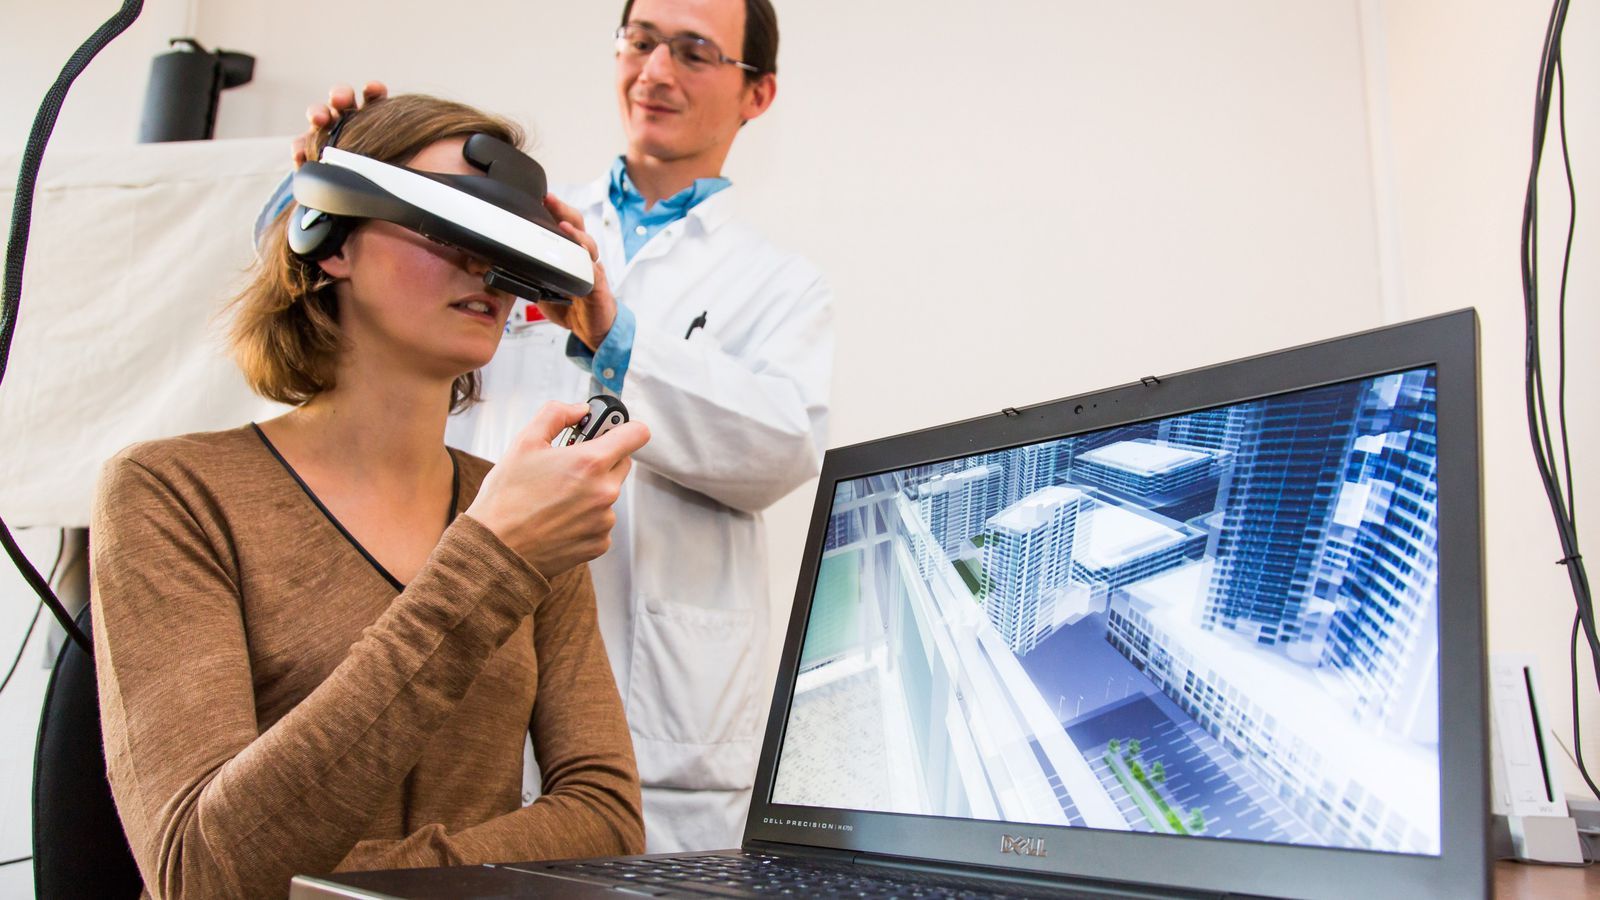 Realidad Aumentada y Realidad Virtual en el campo de la salud